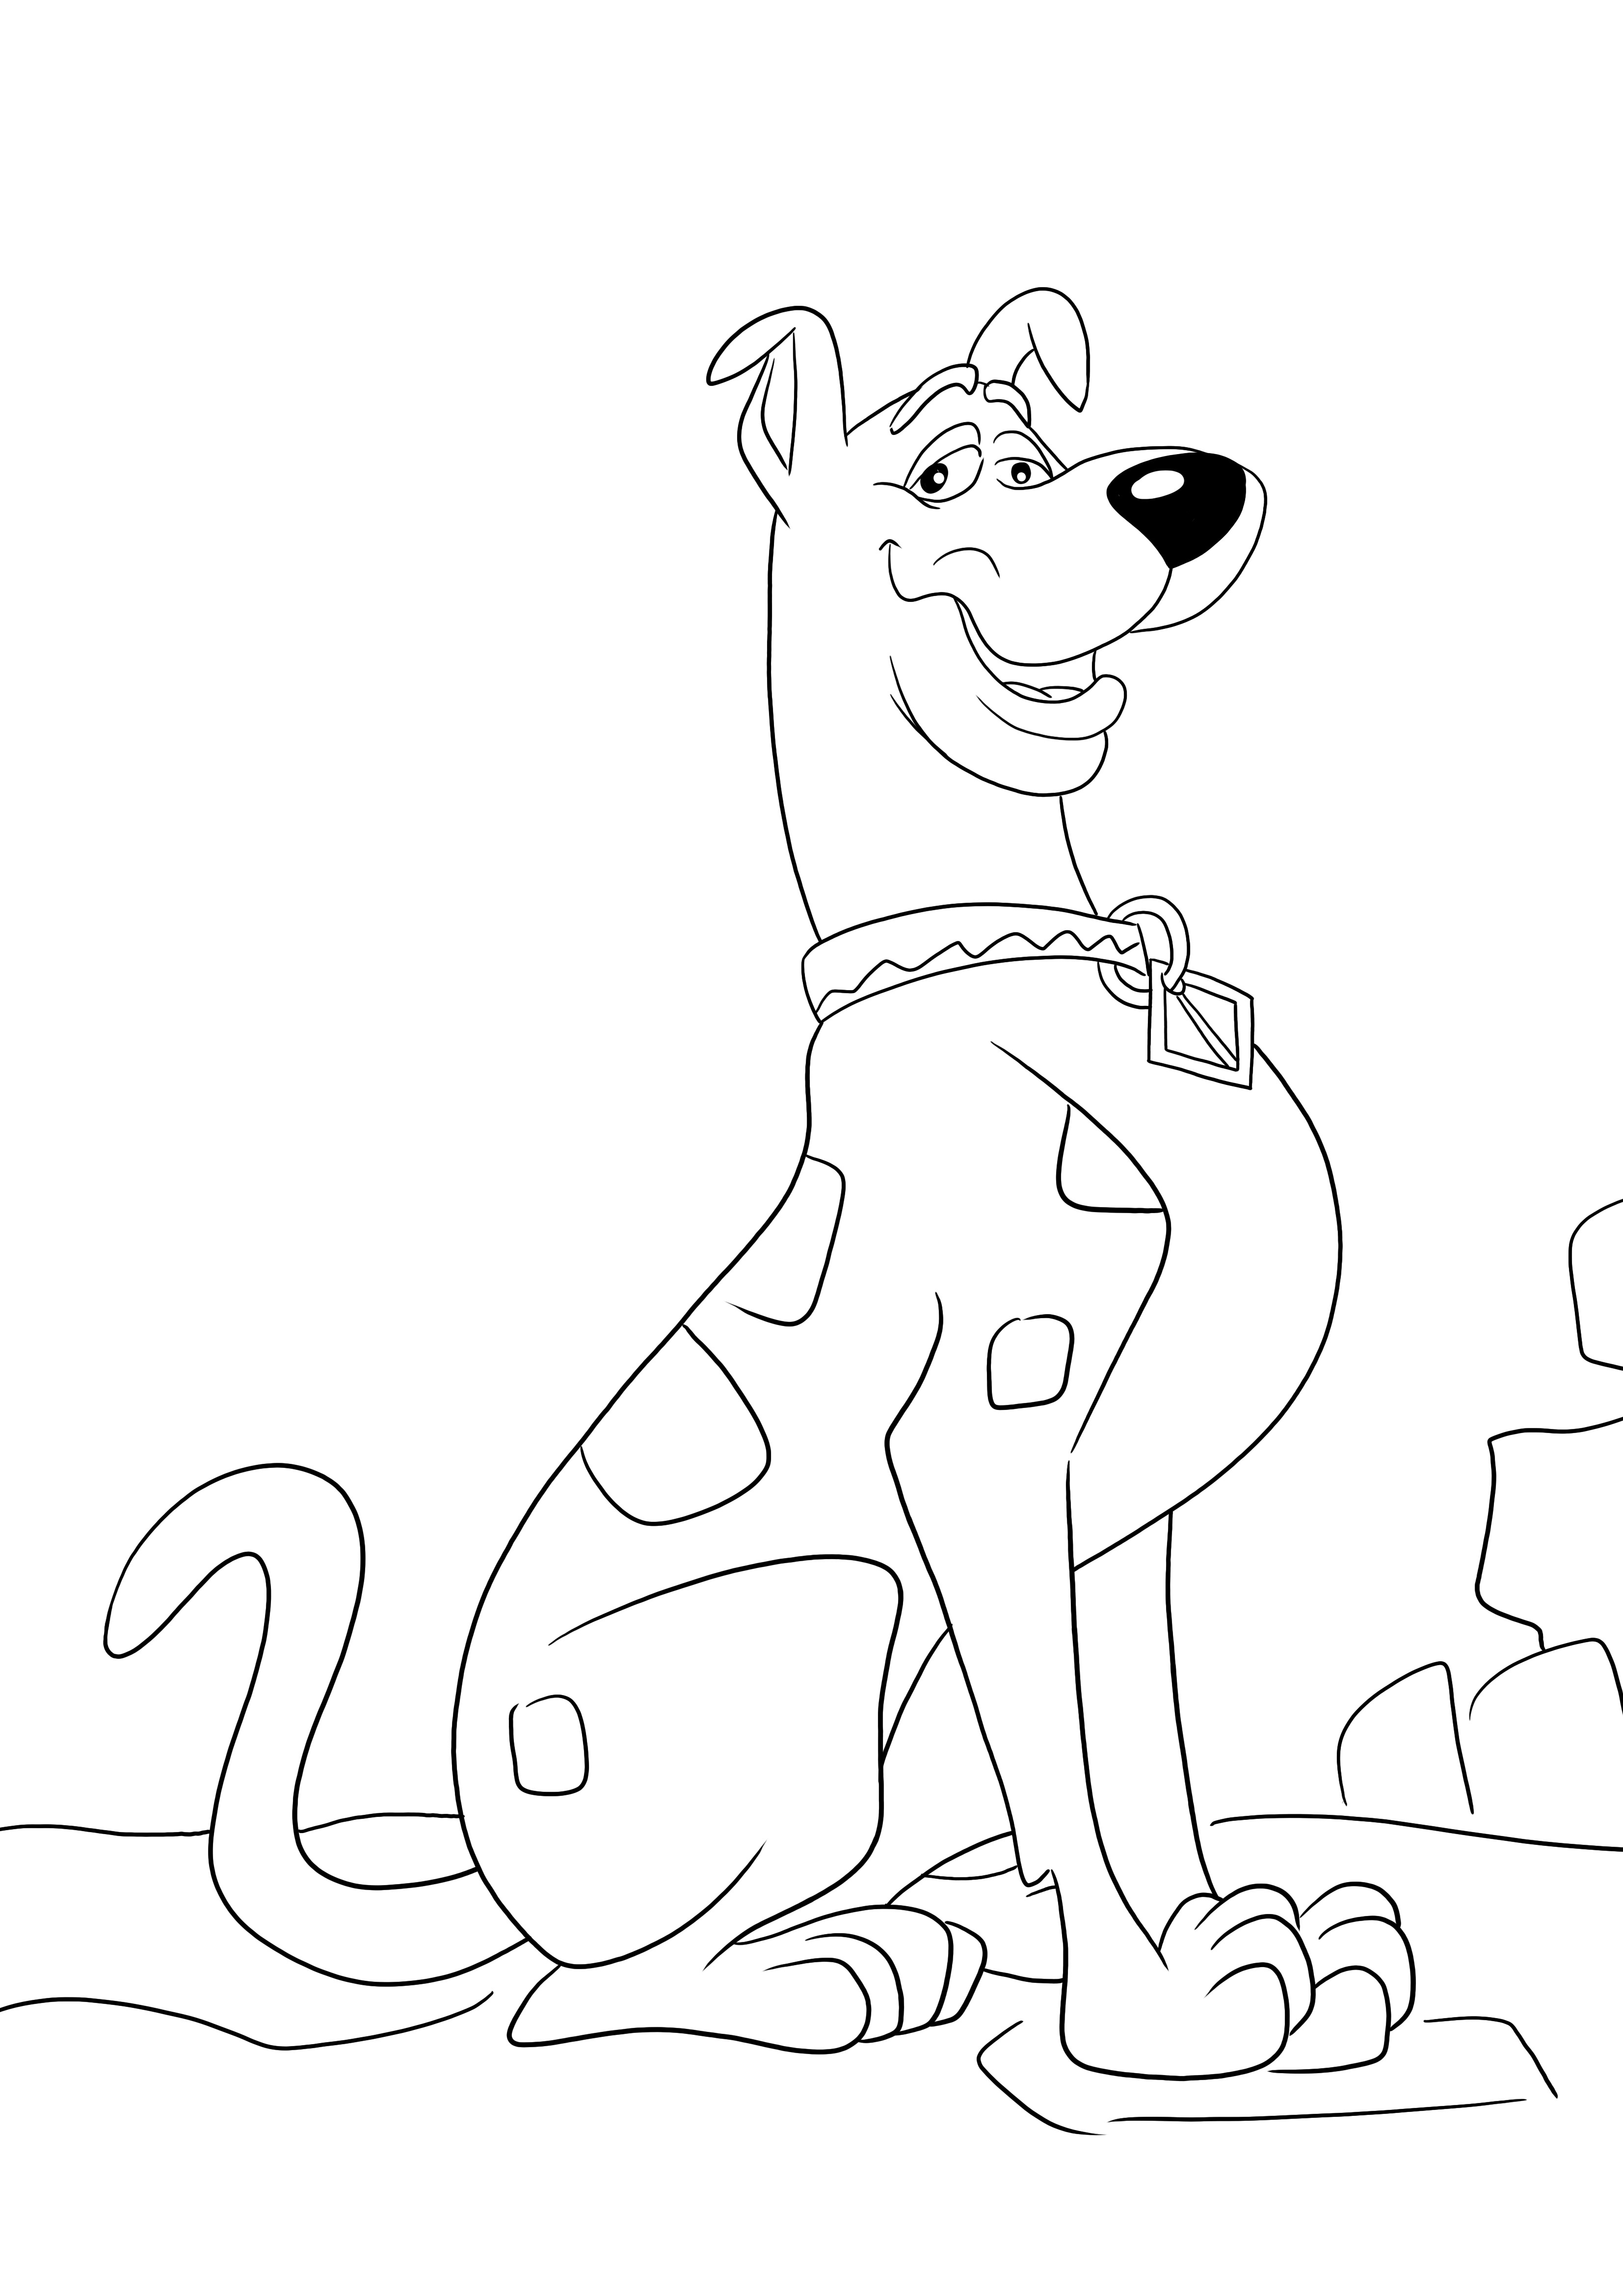 Aquí hay una imagen para colorear gratis del astuto Scooby Doo para imprimir y colorear fácilmente